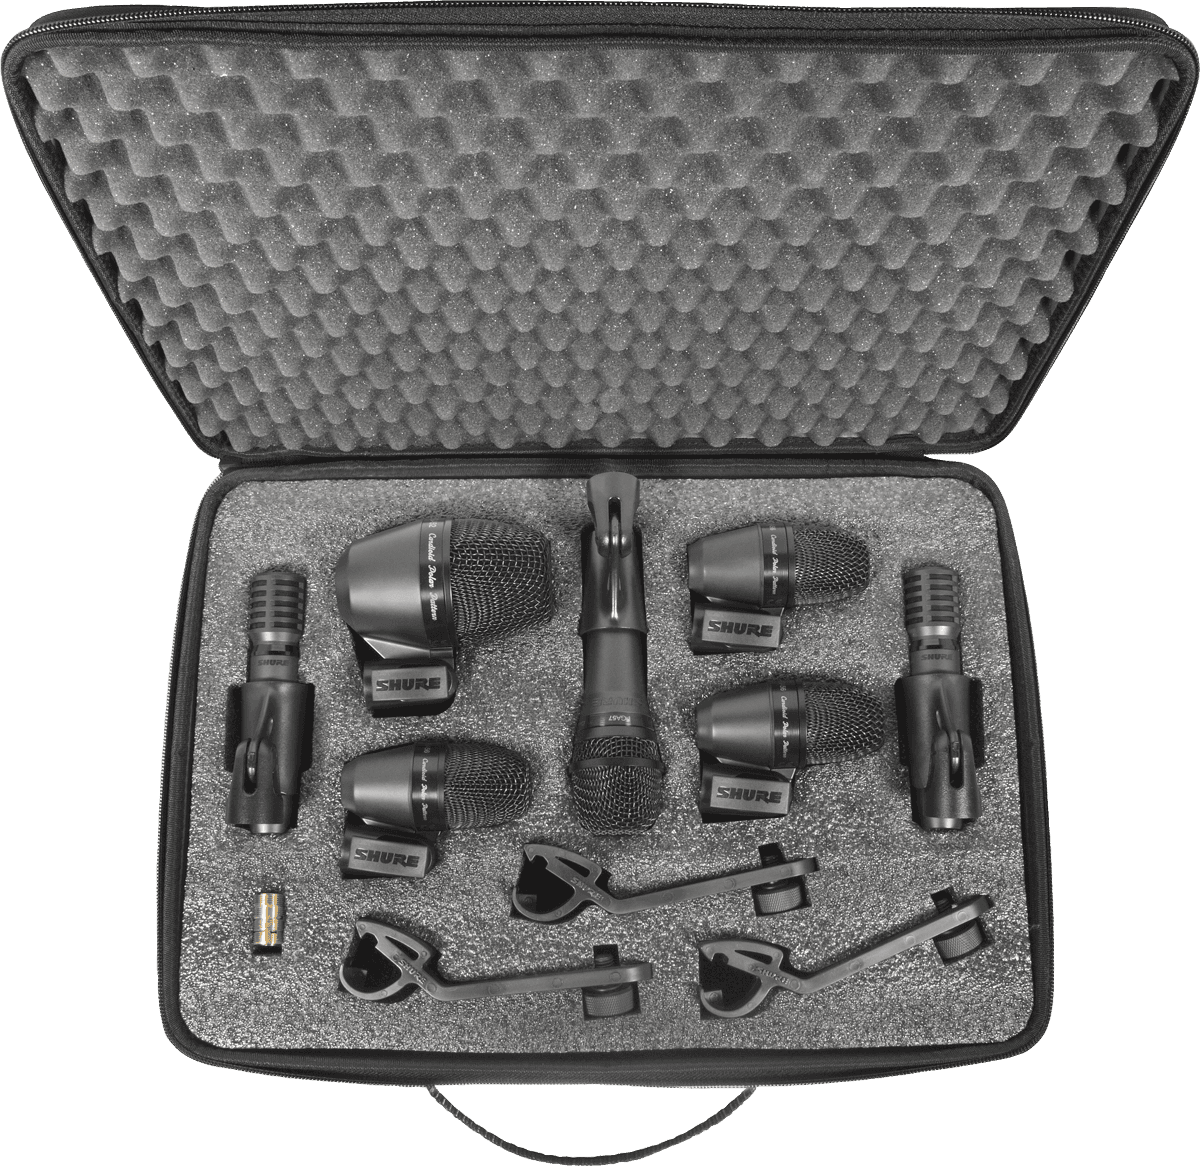 Shure Pga Drumkit 7 - Kabelgebundenes Mikrofon Set - Variation 1